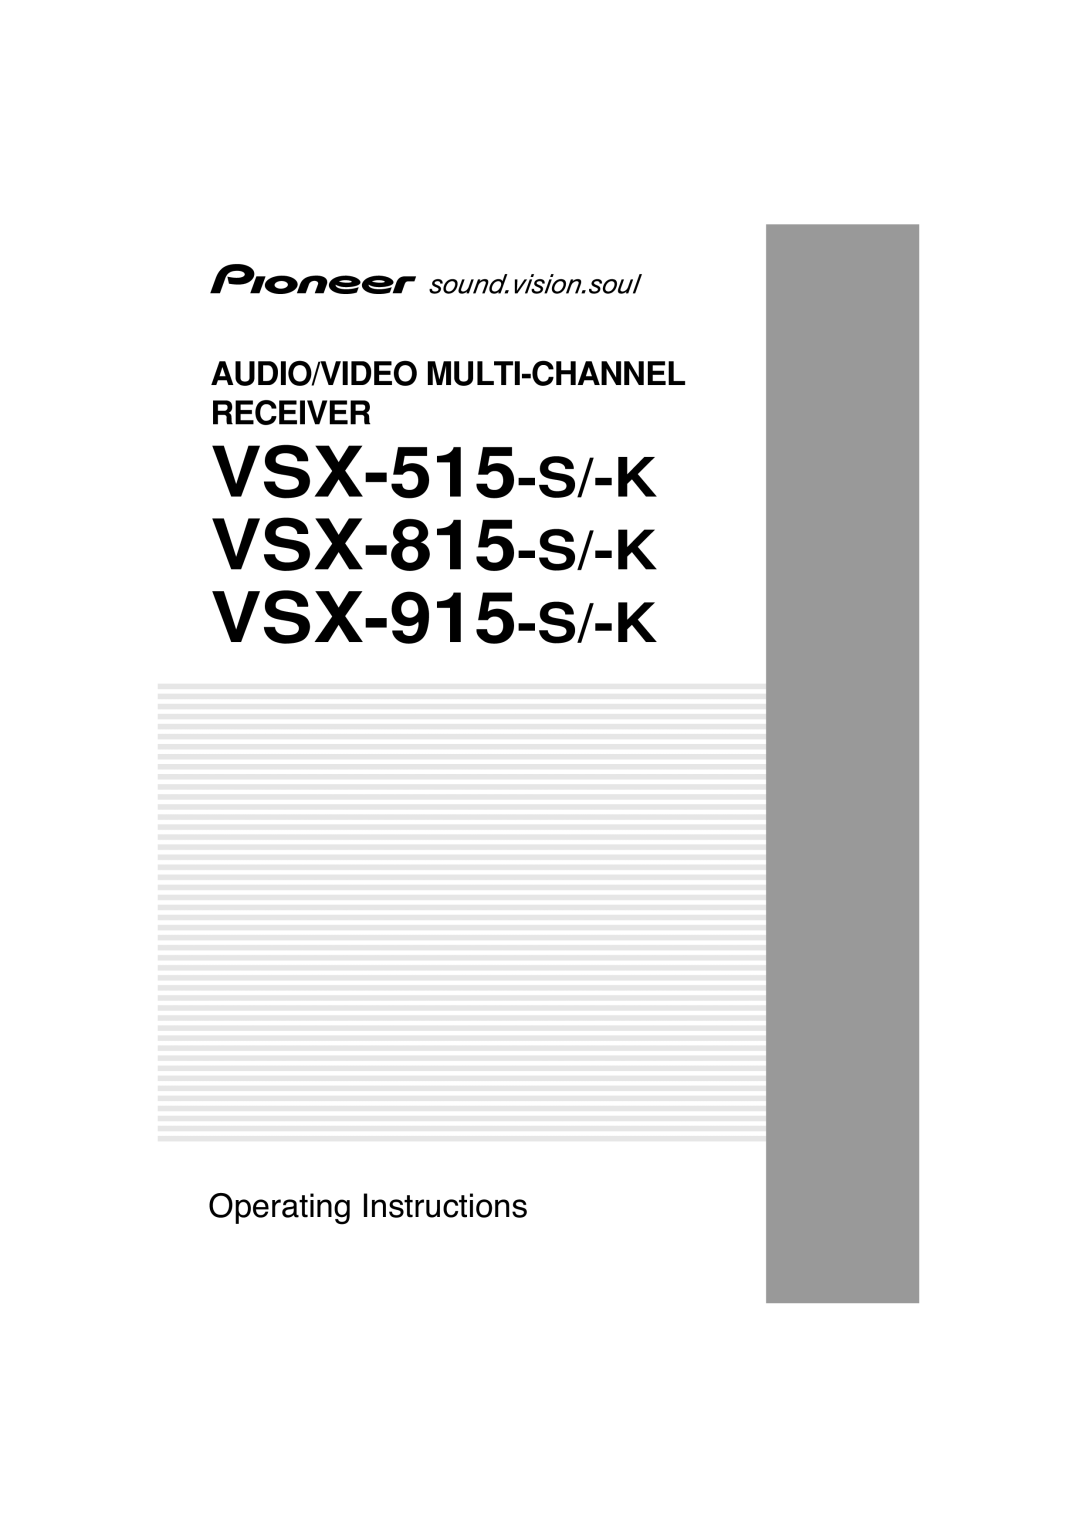 Pioneer manual VSX-515-S/-K VSX-815-S/-K VSX-915-S/-K, Audio/Video Multi-Channel Receiver, Operating Instructions 